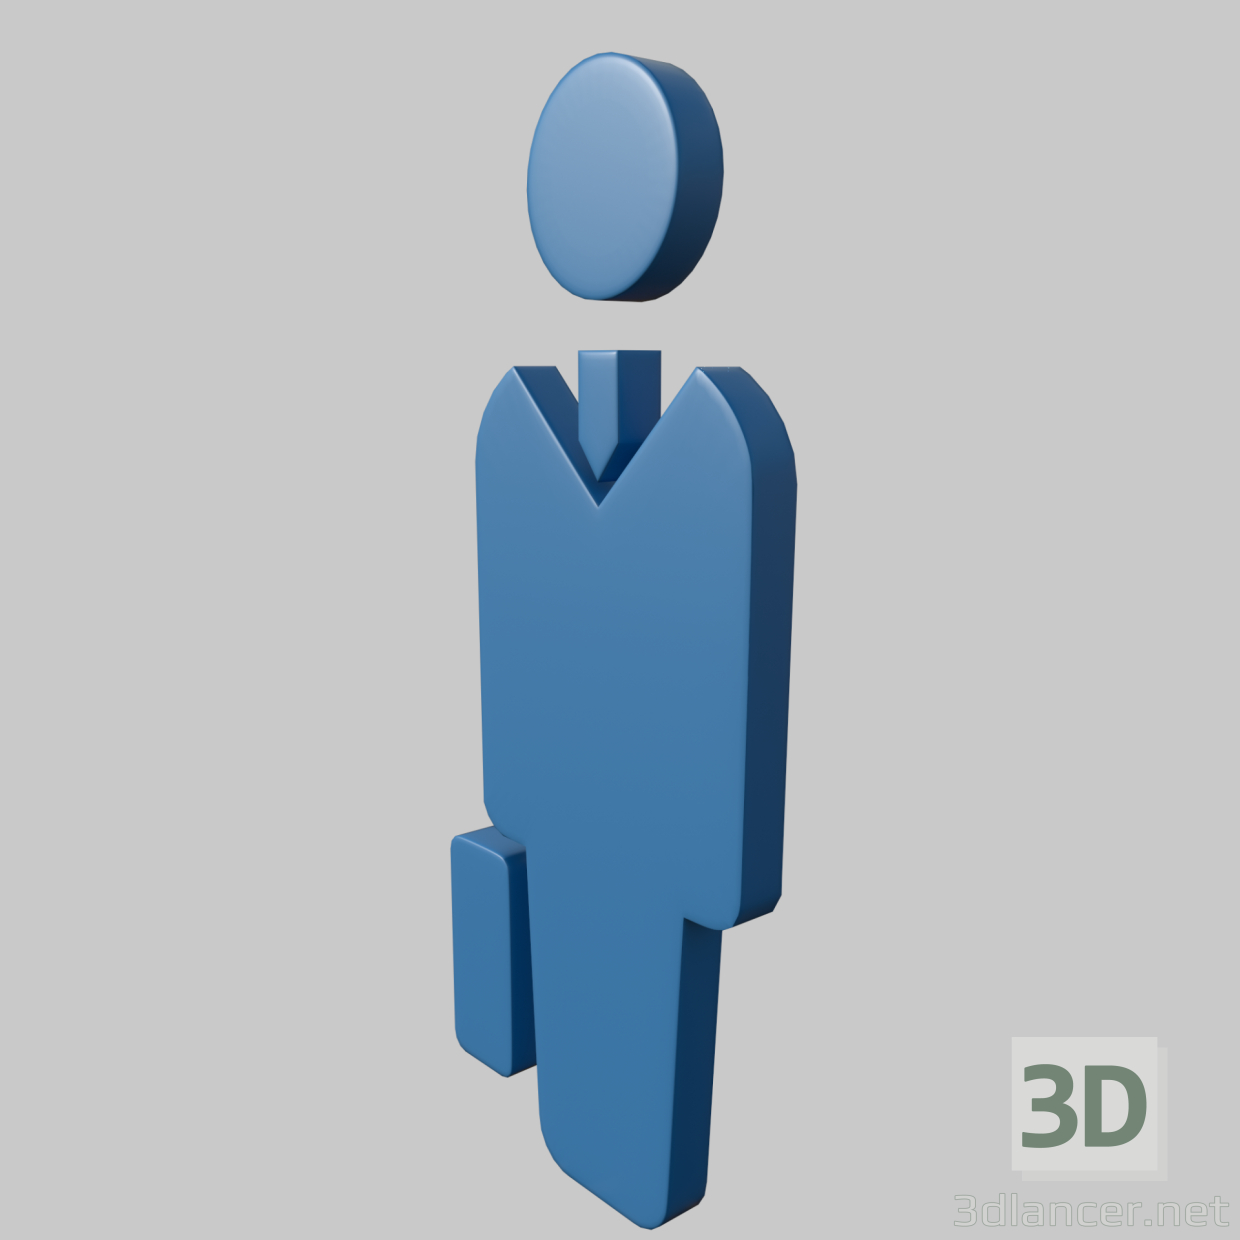 3D modeli işaret memuru - önizleme